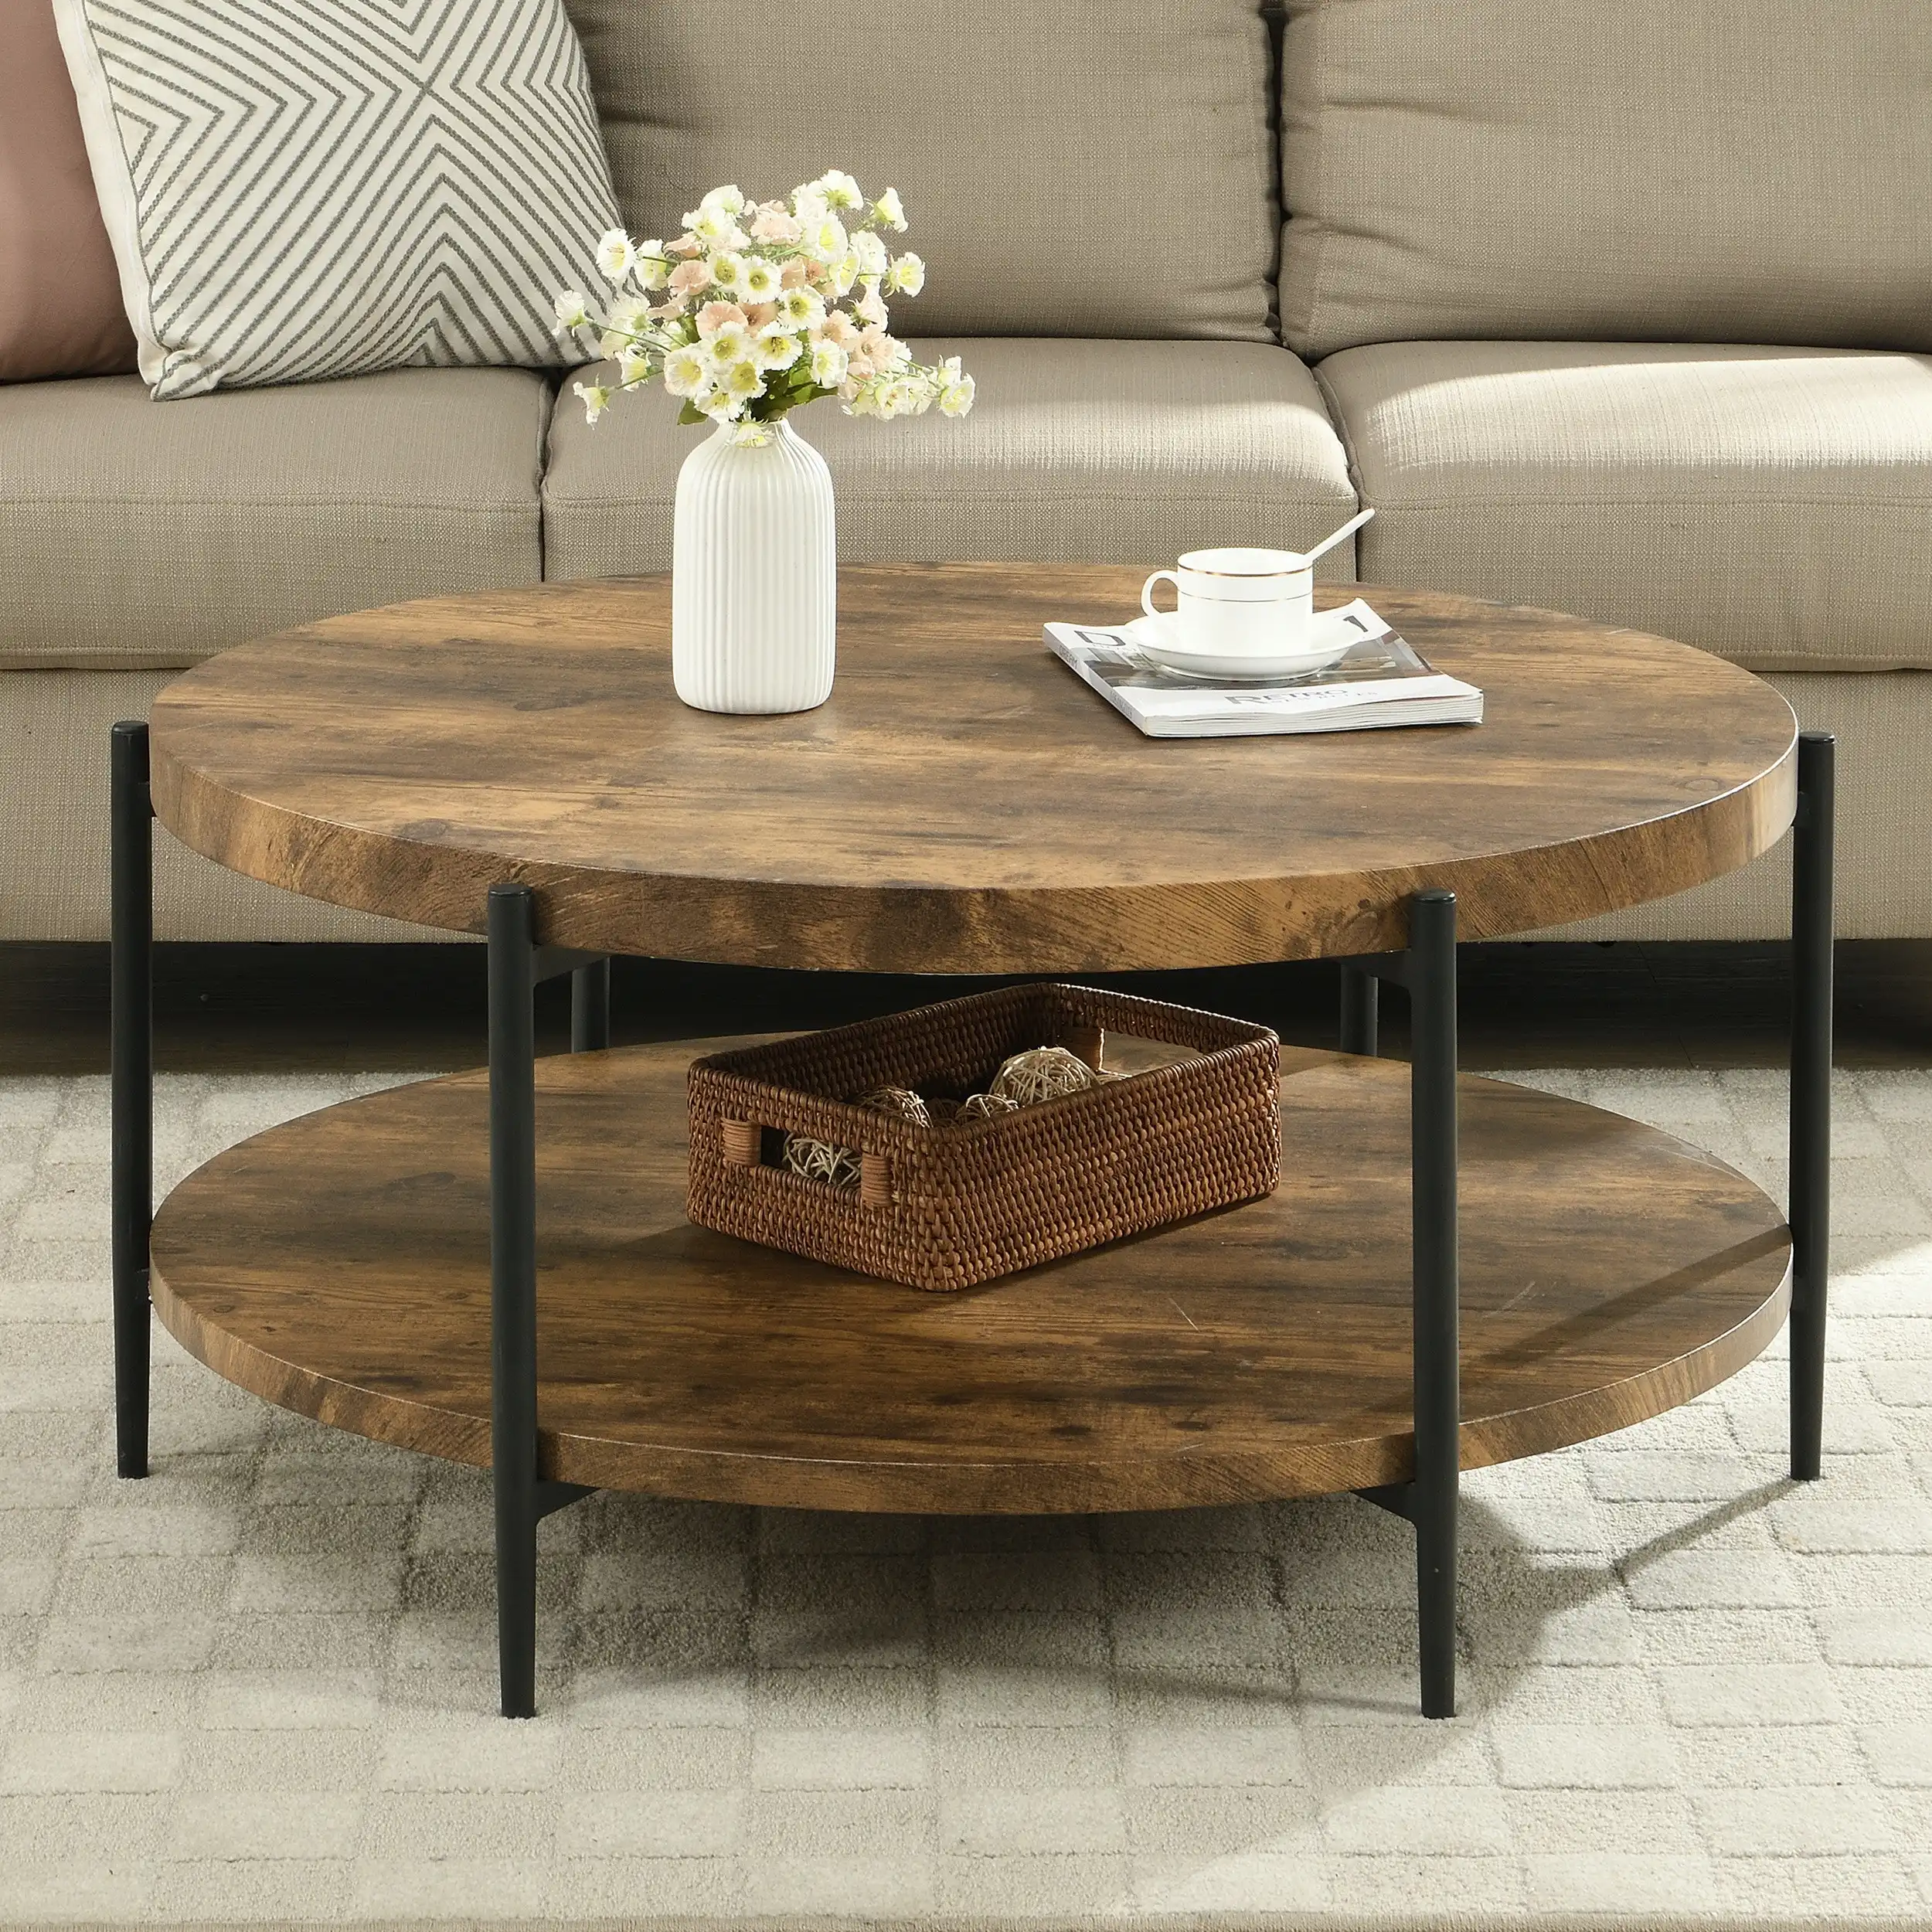 IHOMDEC 2-Tier Industrial Wooden Round Coffee Table with 6 metal legs Rustic Dark Brown